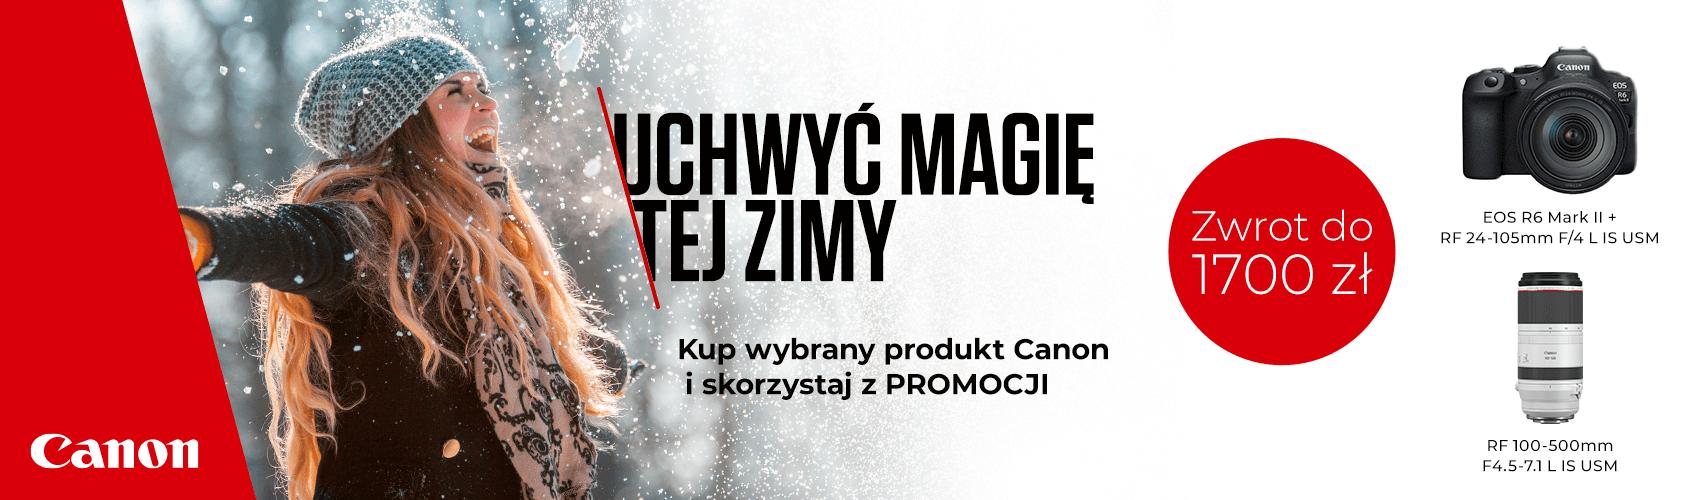 Uchwyć magię tej zimy z firmą Canon! Teraz przy zakupie wybranych produktów, możesz otrzymać cashback aż do 1700 zł!